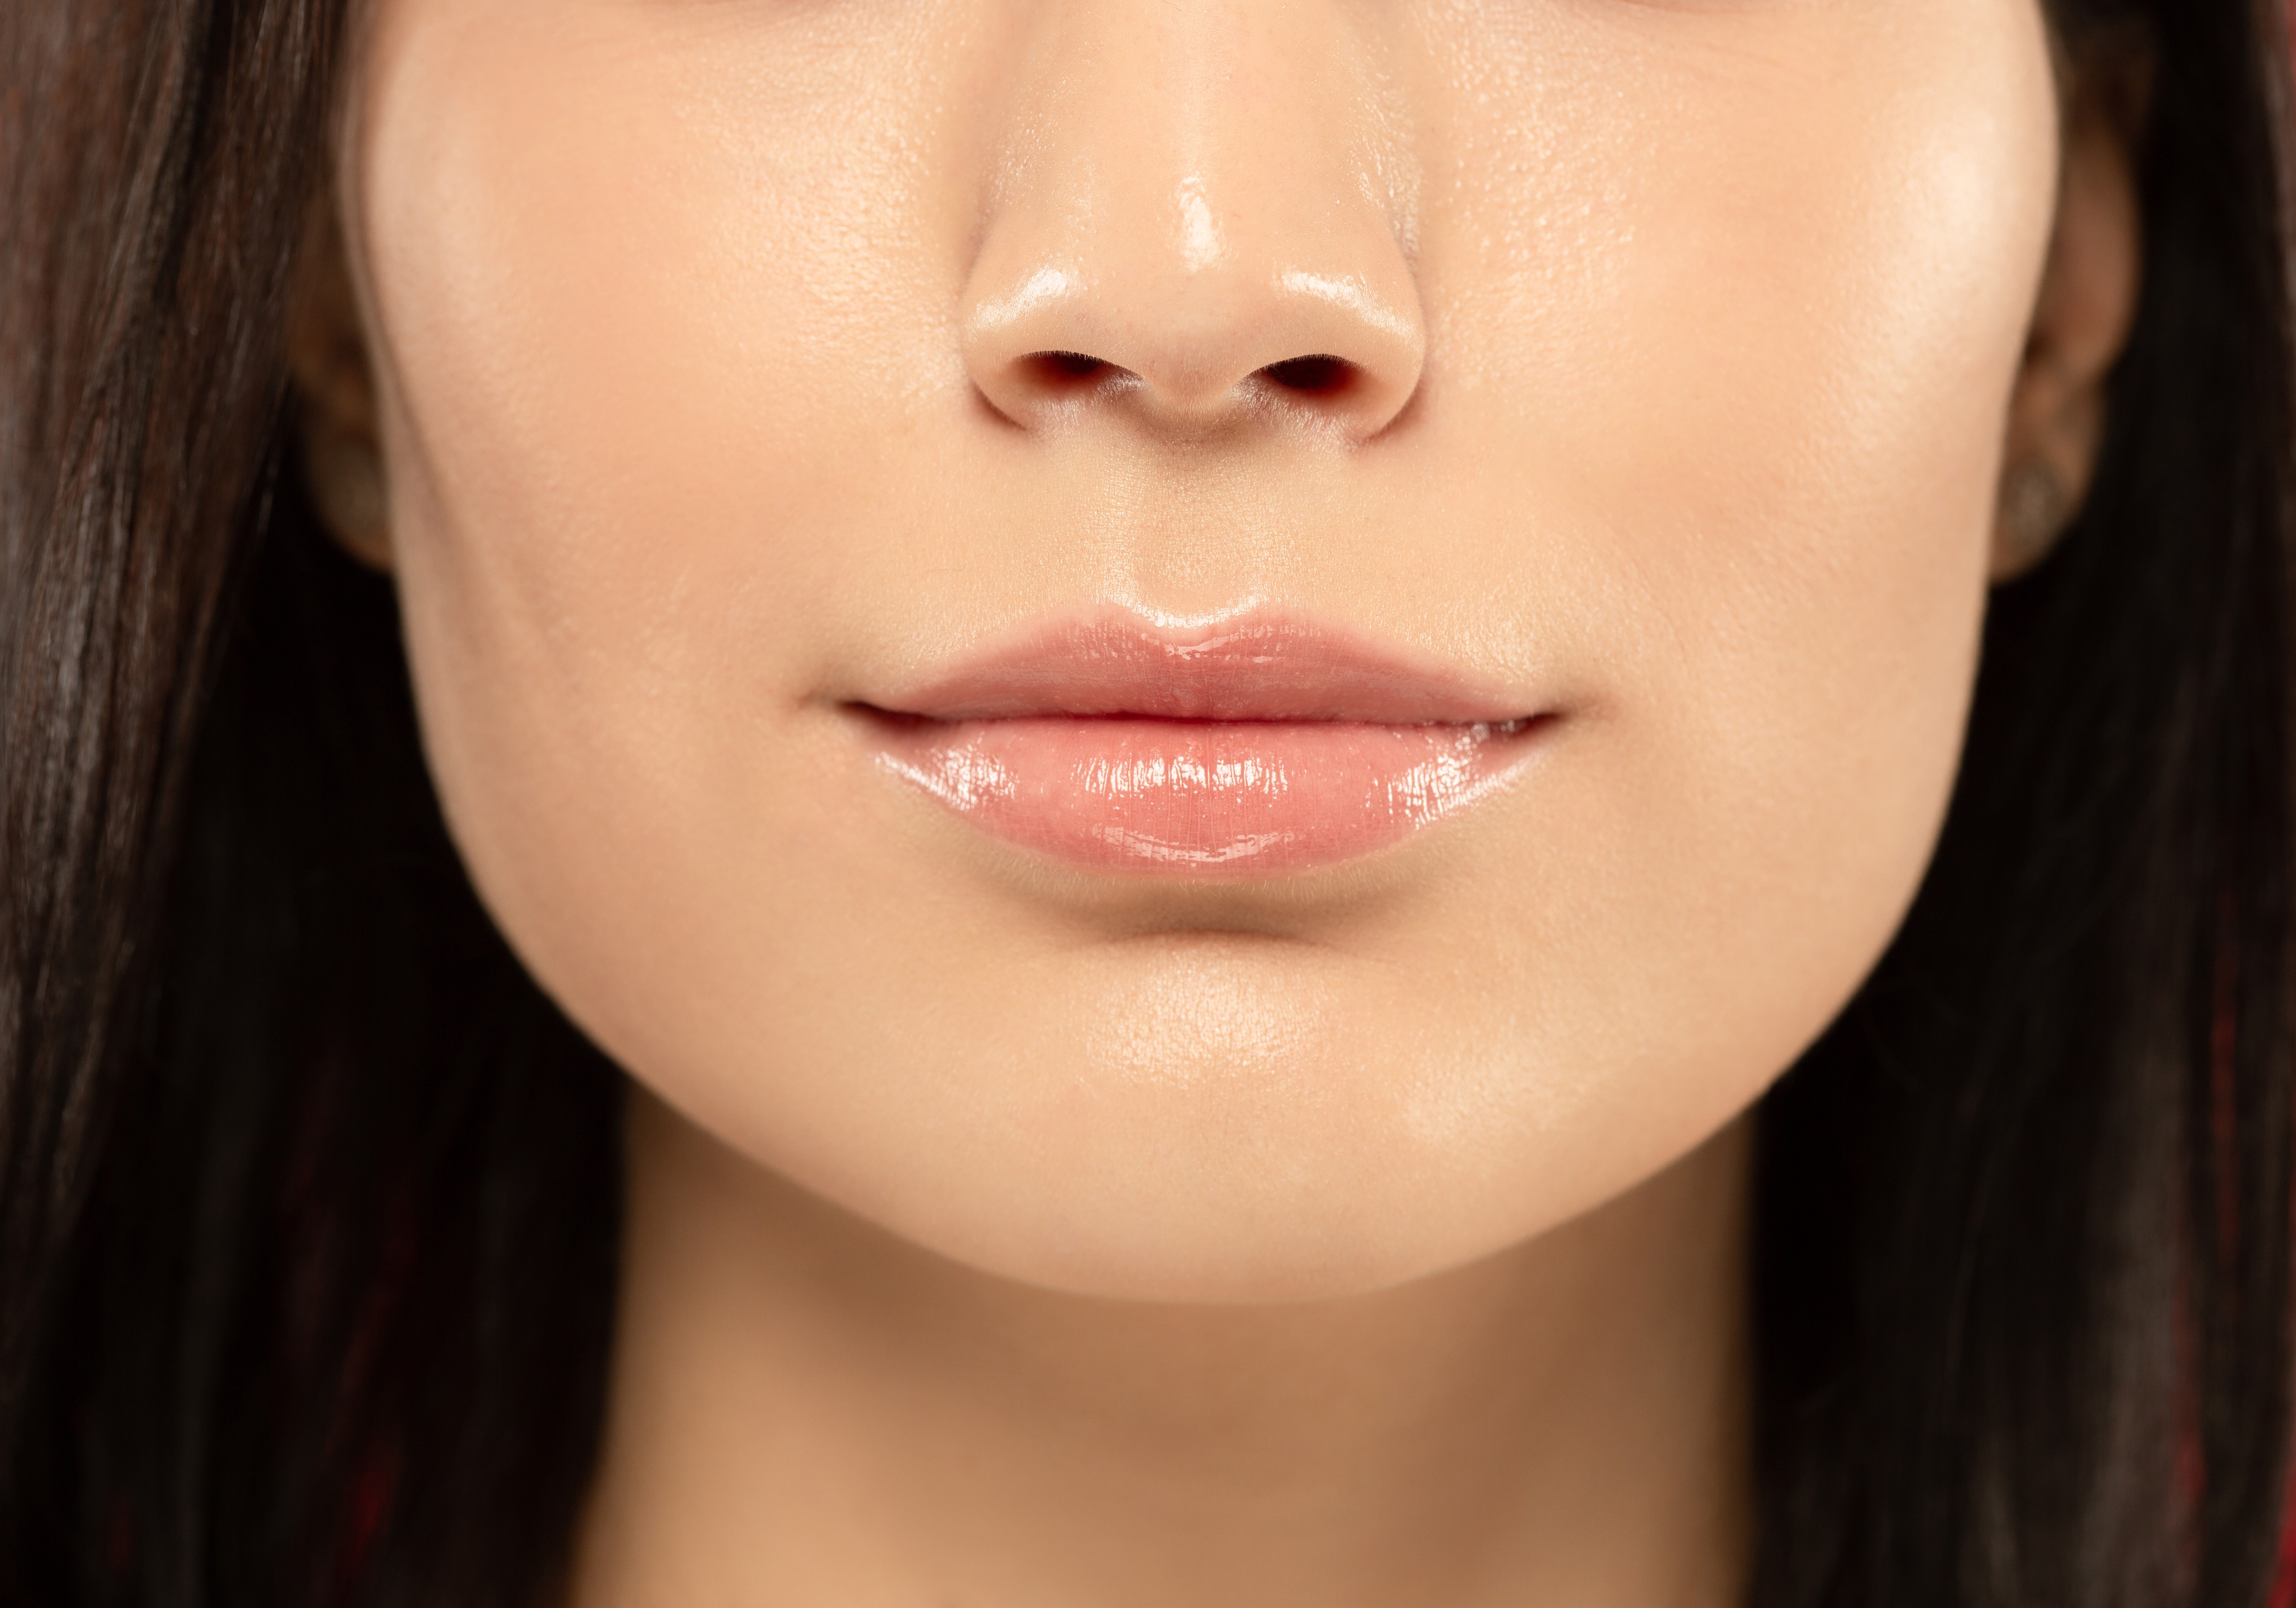 Lábios com gloss transparente é tendência (Foto: Freepik)